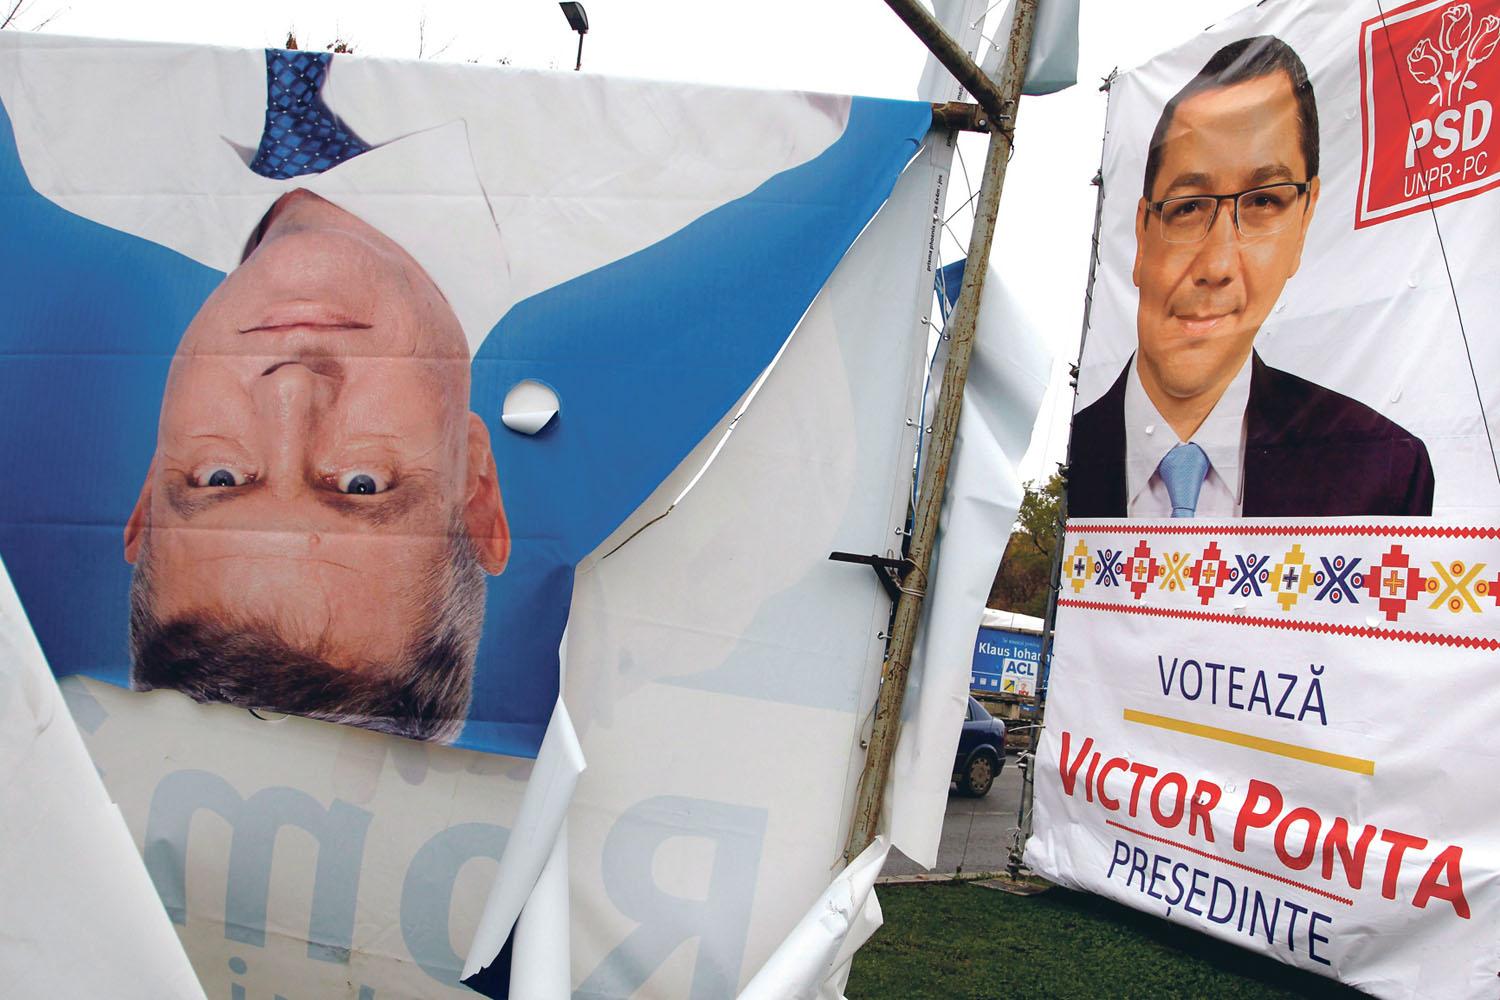 Victor Ponta és a máris fejre állni látszó Klaus Johannis választási plakátjai Bukarestben